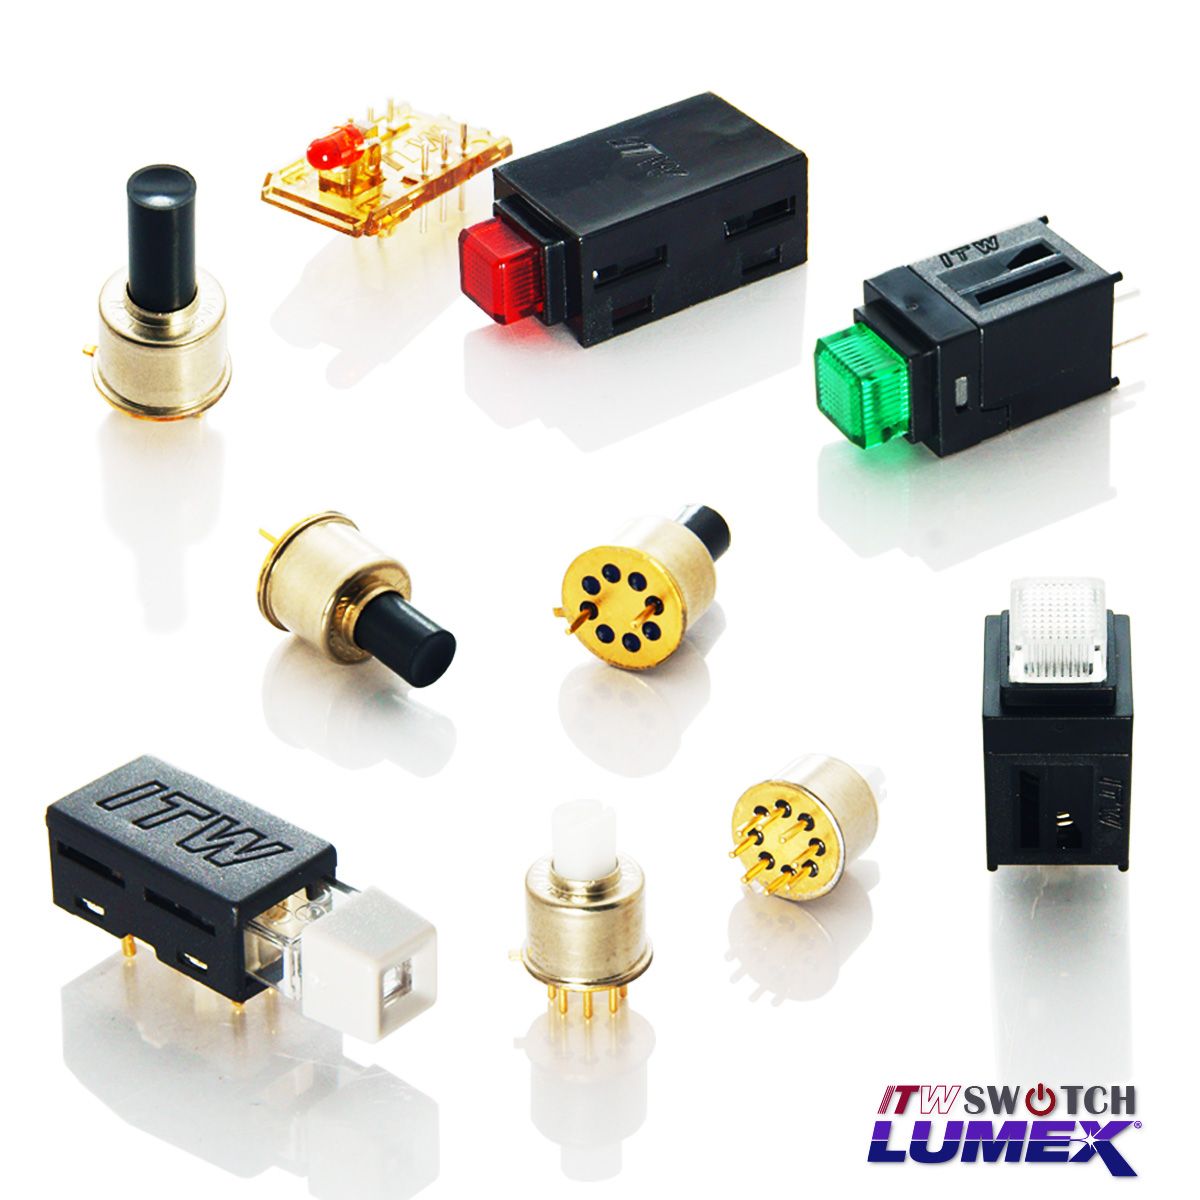 ITW Lumex Switchtillhandahåller miniatyr LED-belysta tryckknappsbrytare för PCBA-applikationer.